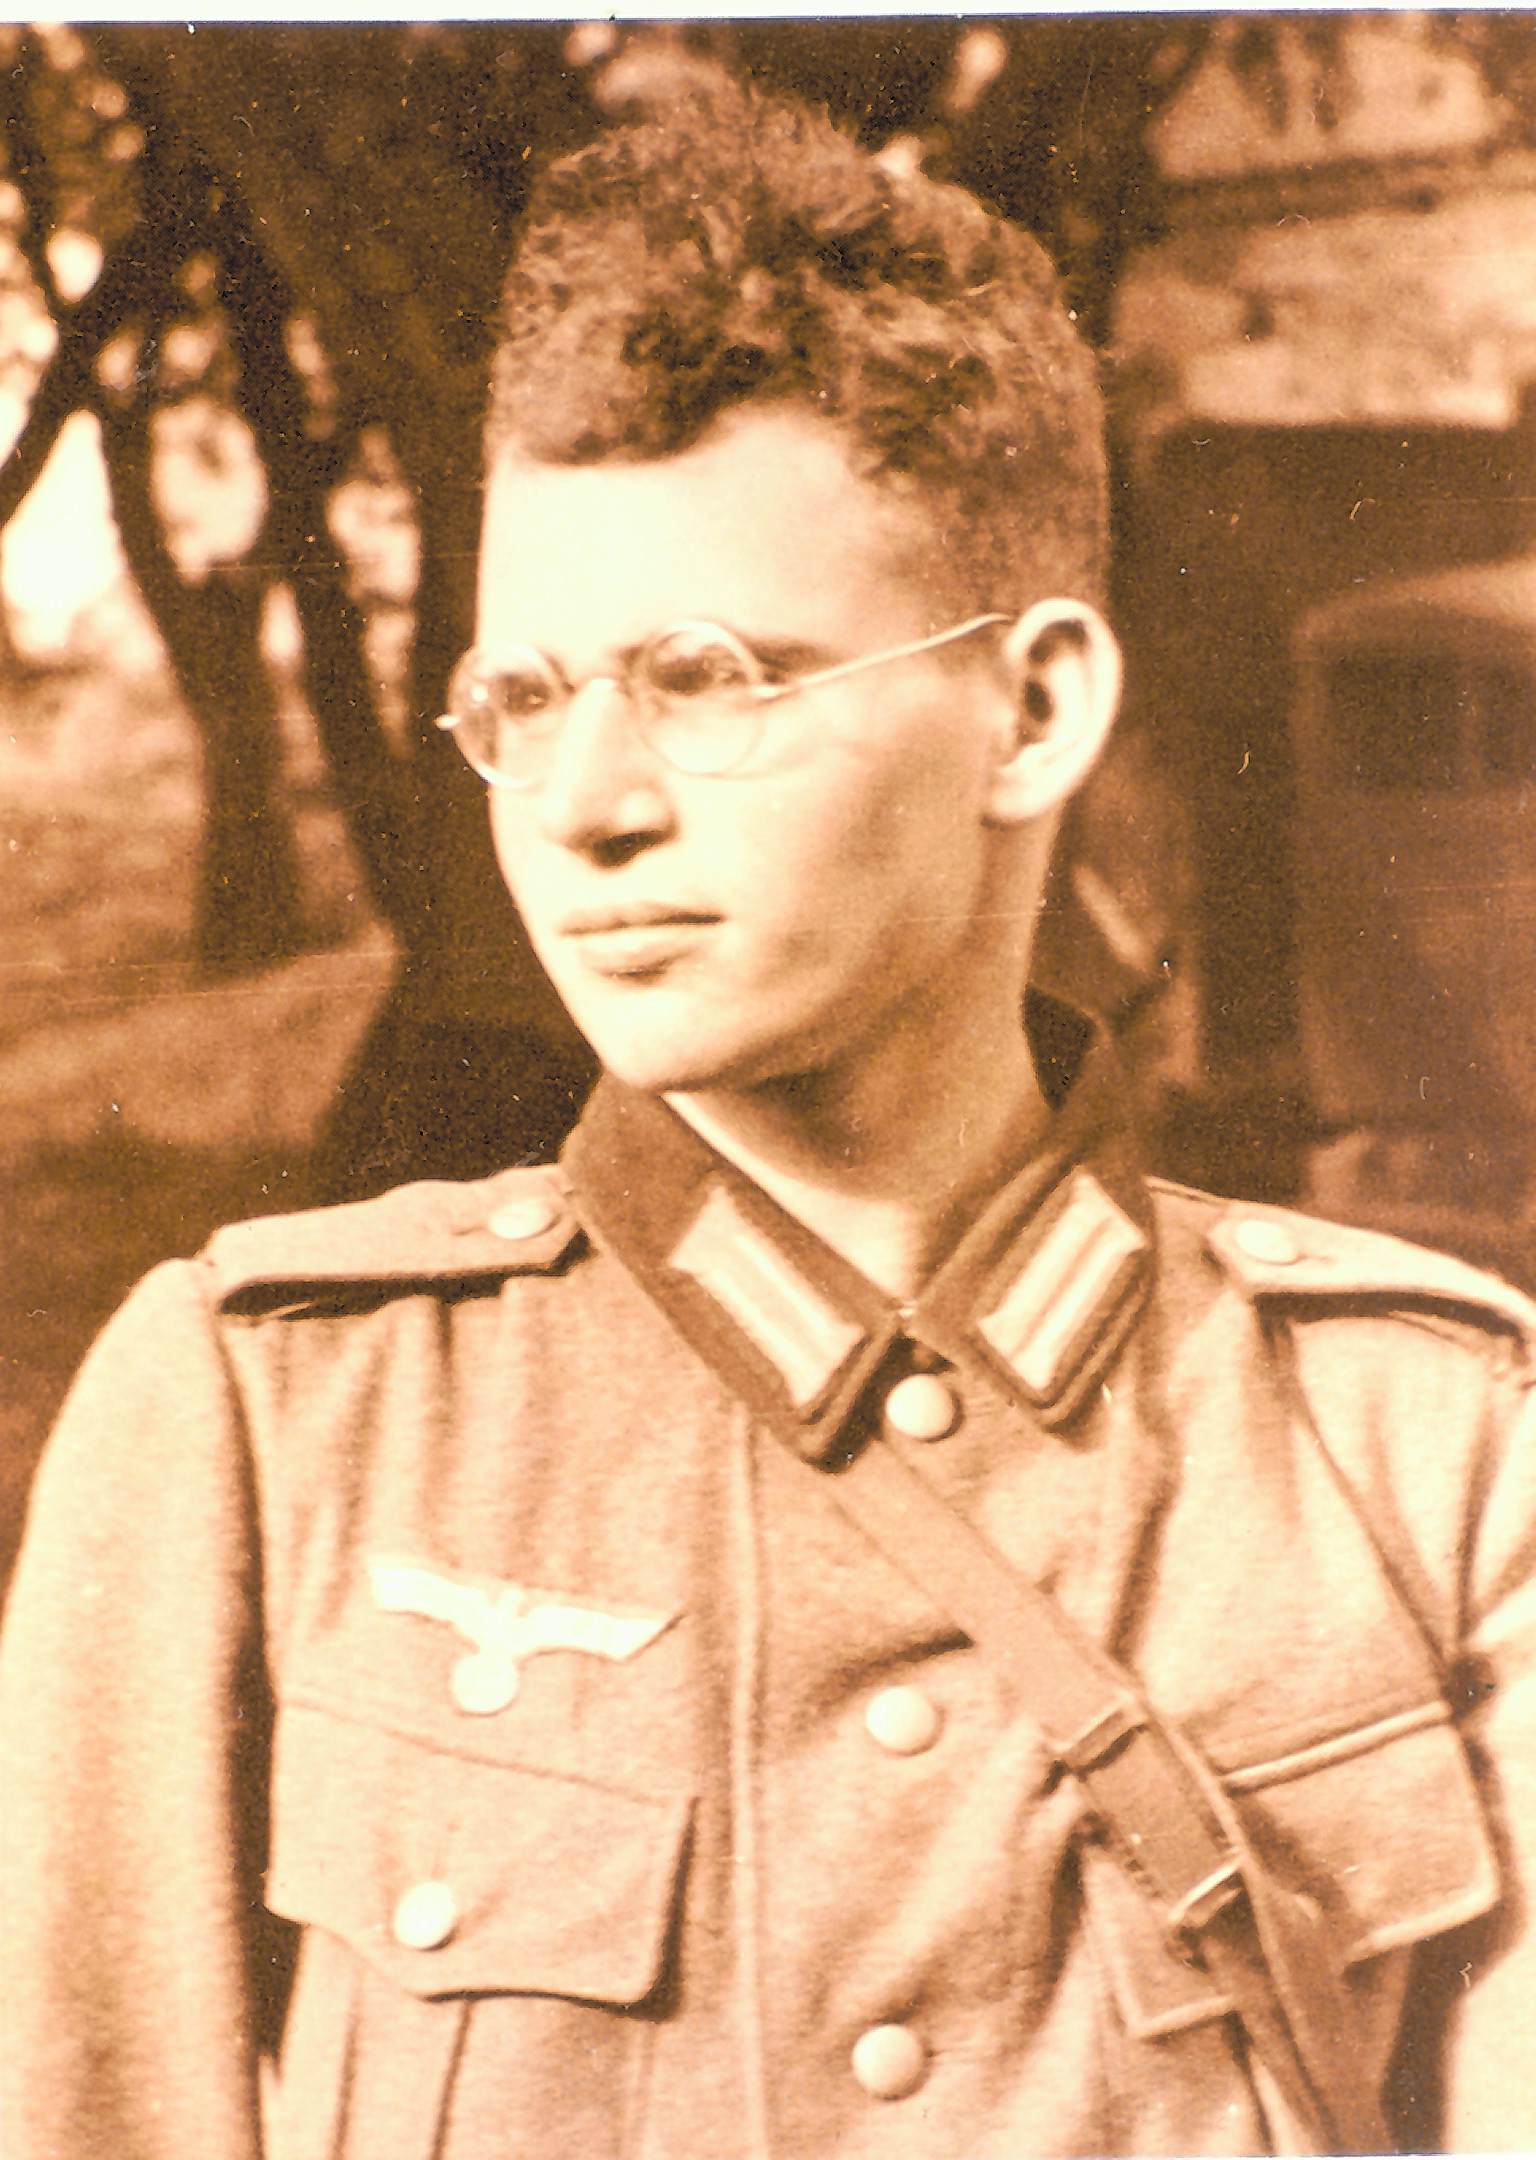 Wohl in der Hoffnung, damit seine jüdische Mutter zu schützen, meldet sich Hans Leipelt freiwillig zur Wehrmacht, bekommt das Eiserne Kreuz. 1940 wird er wegen seiner jüdischen Herkunft wieder entlassen.